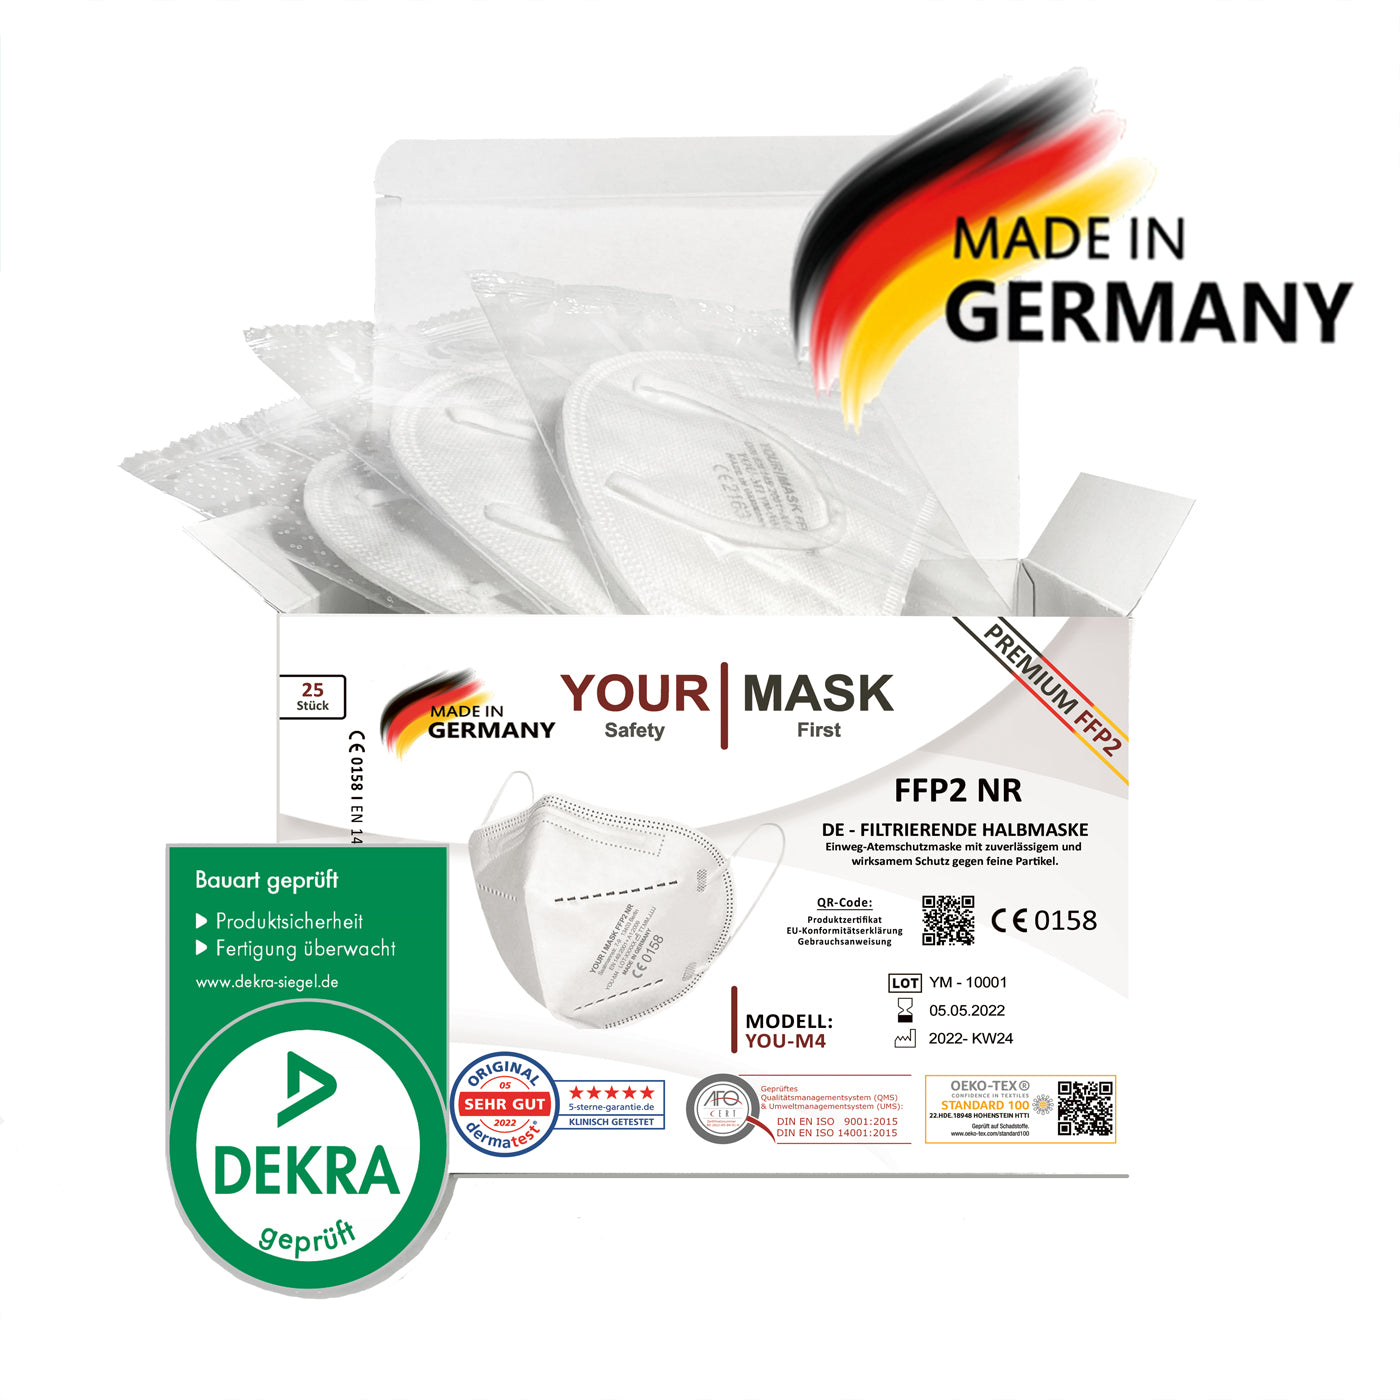 PREMIUM FFP2-Maske YOU-M4 kaufen (Karton 250 Stück) ab 0,35 € / Stück netto